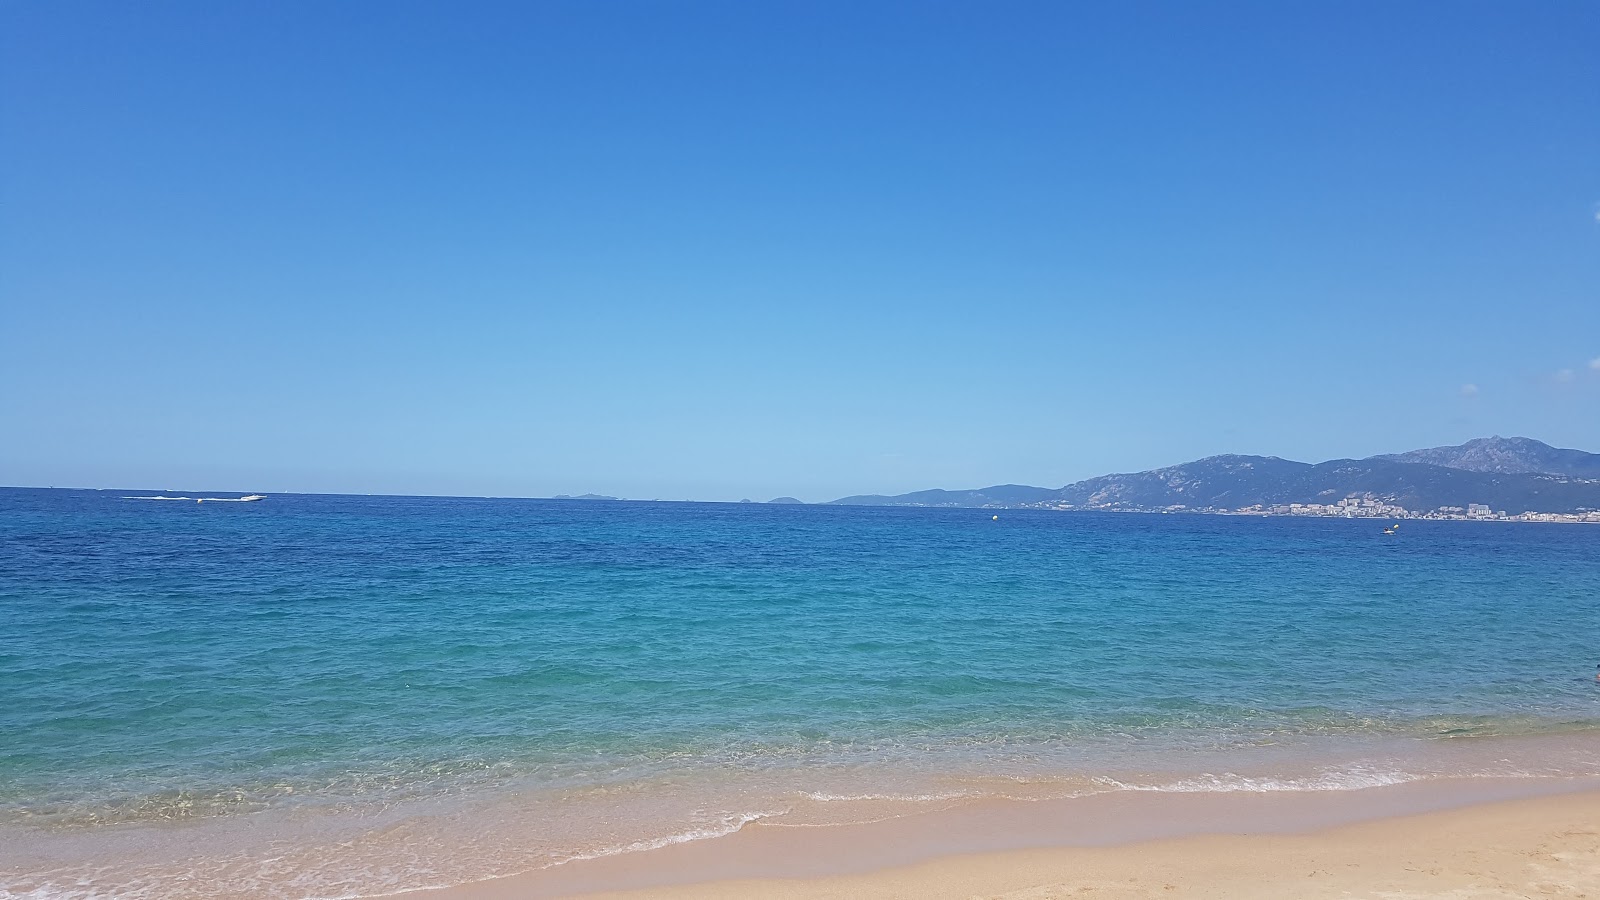 Fotografija Agosta beach podprto z obalami